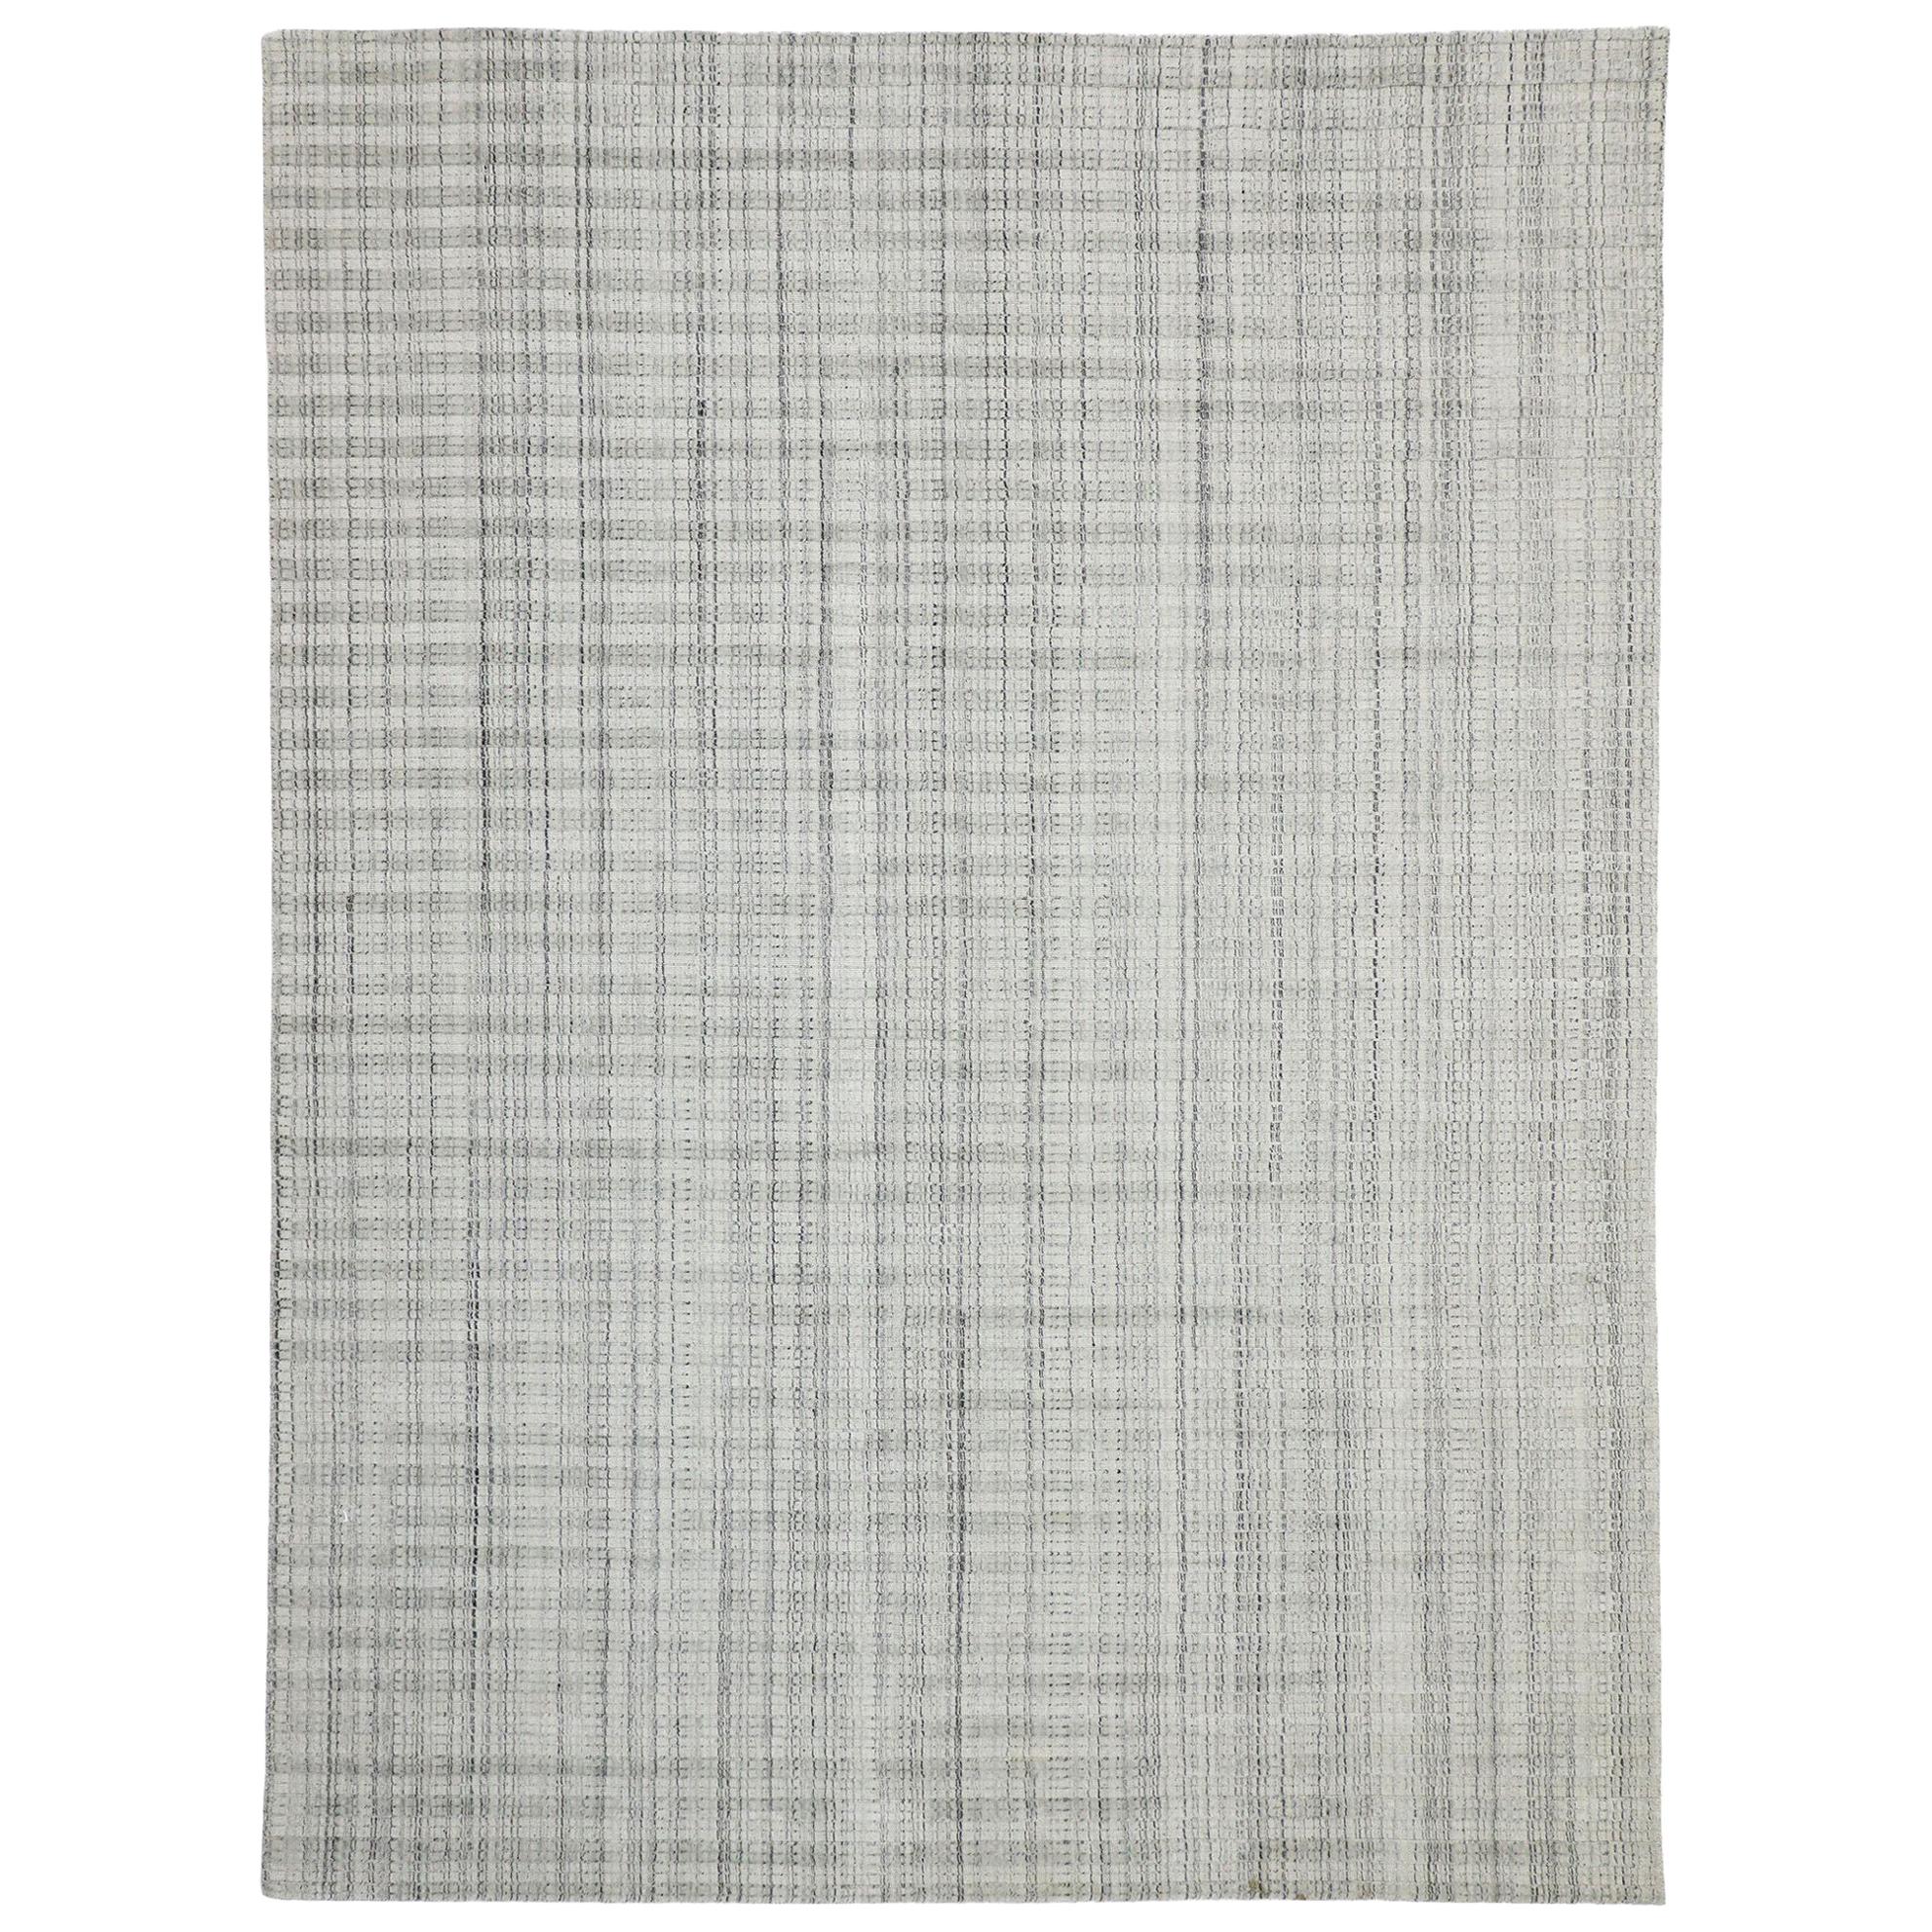 Grauer Übergangsteppich im schwedischen Gustavianischen Stil, Textur-Teppich